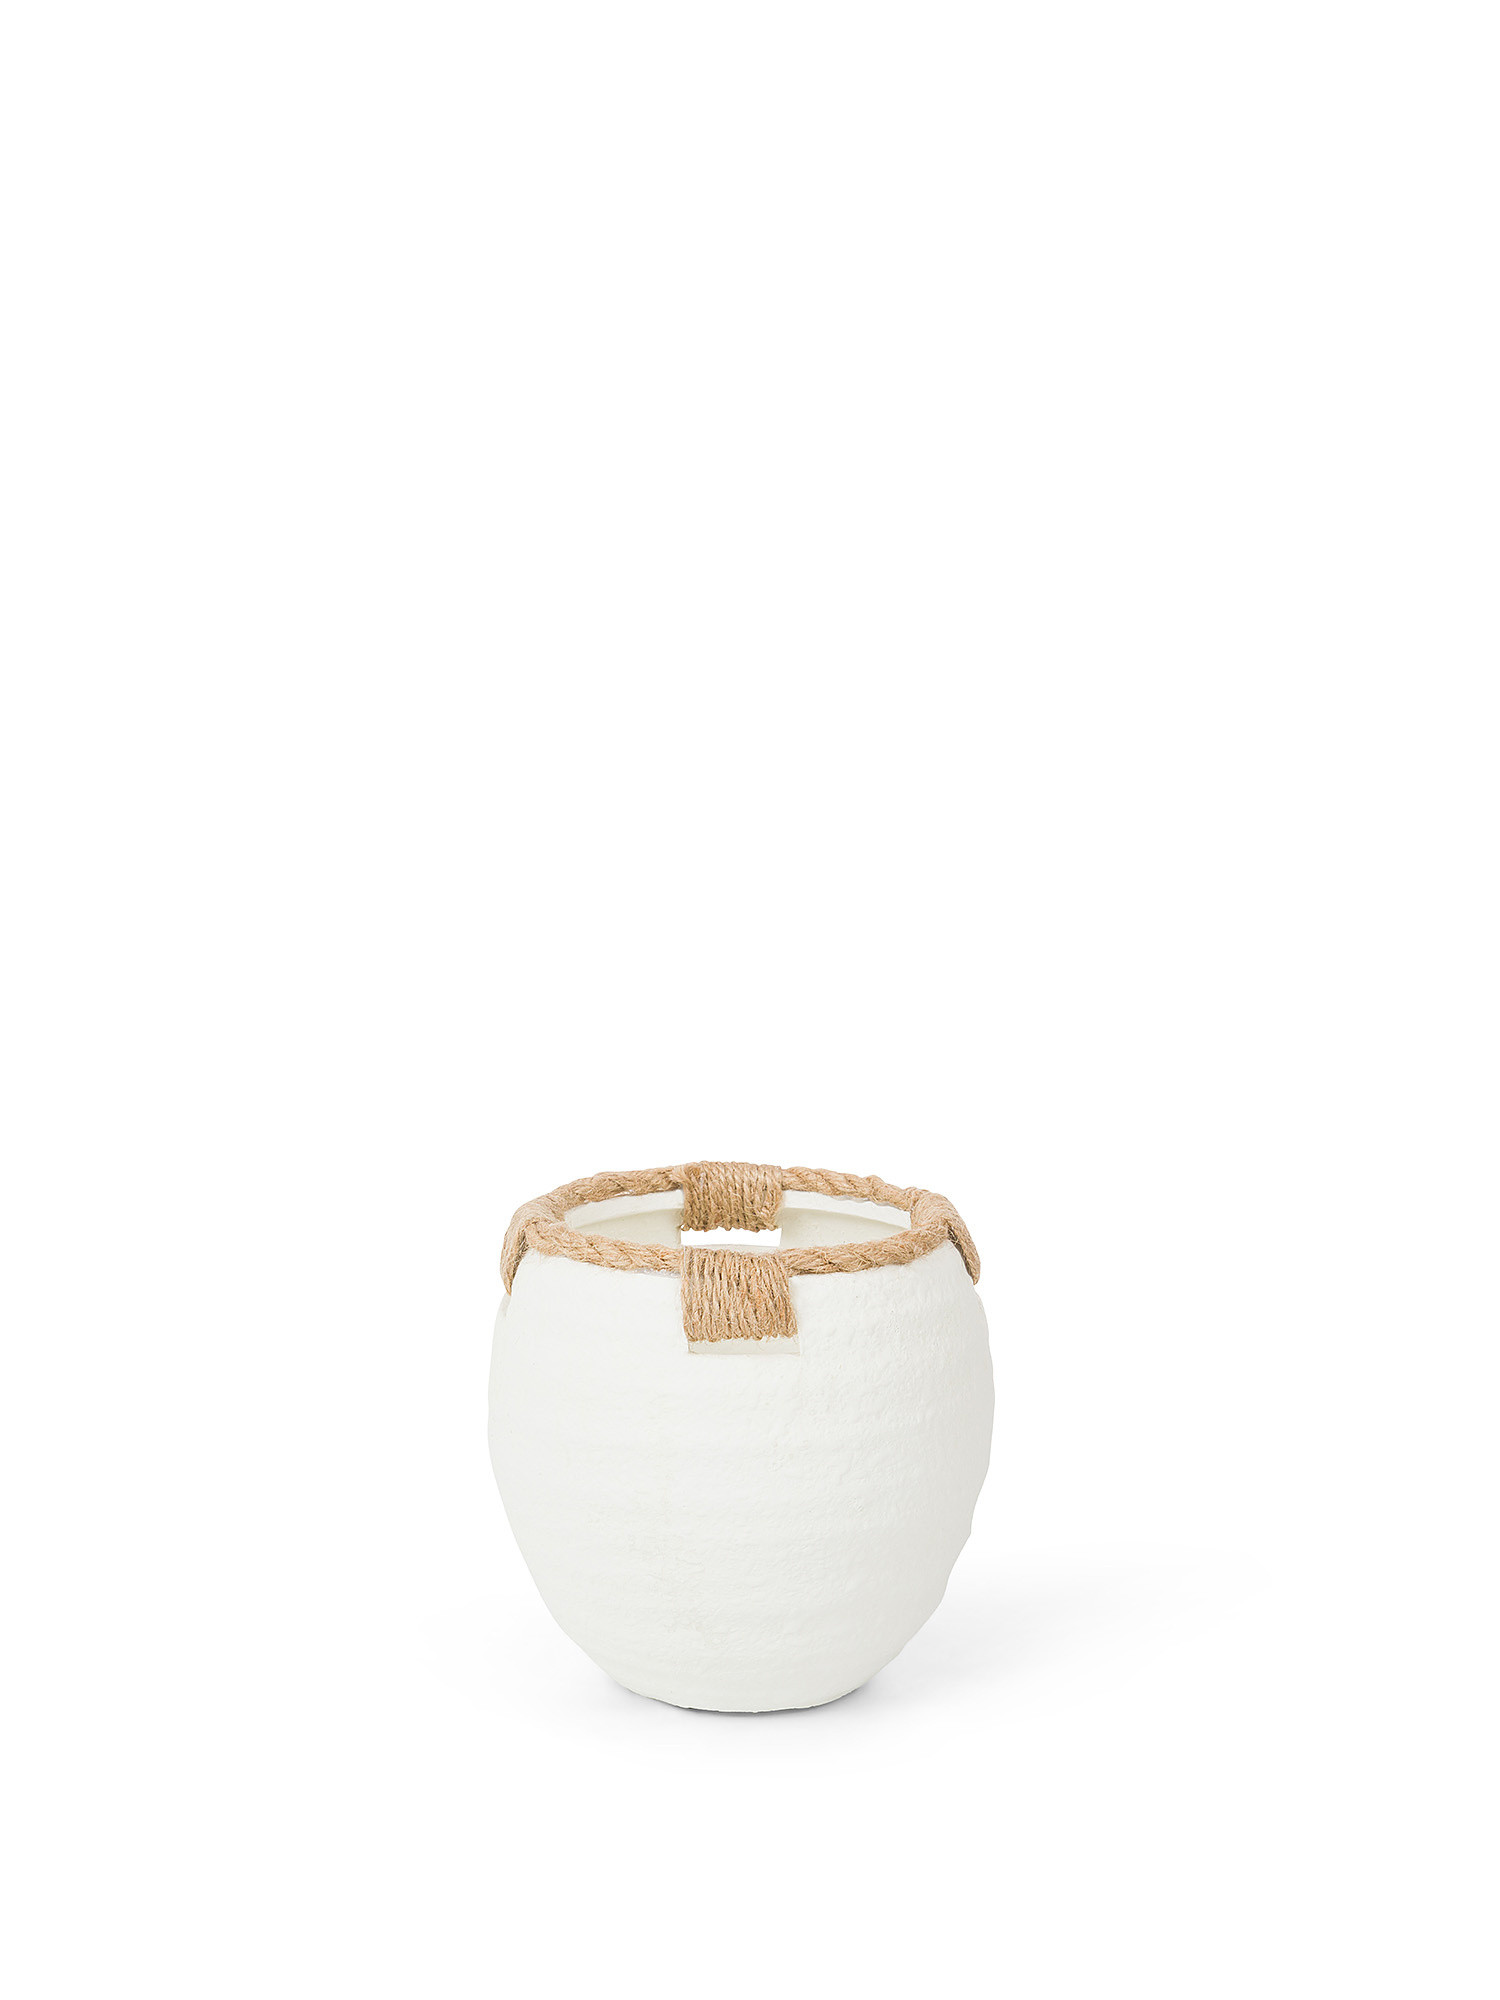 Round terracotta vase, White, large image number 0